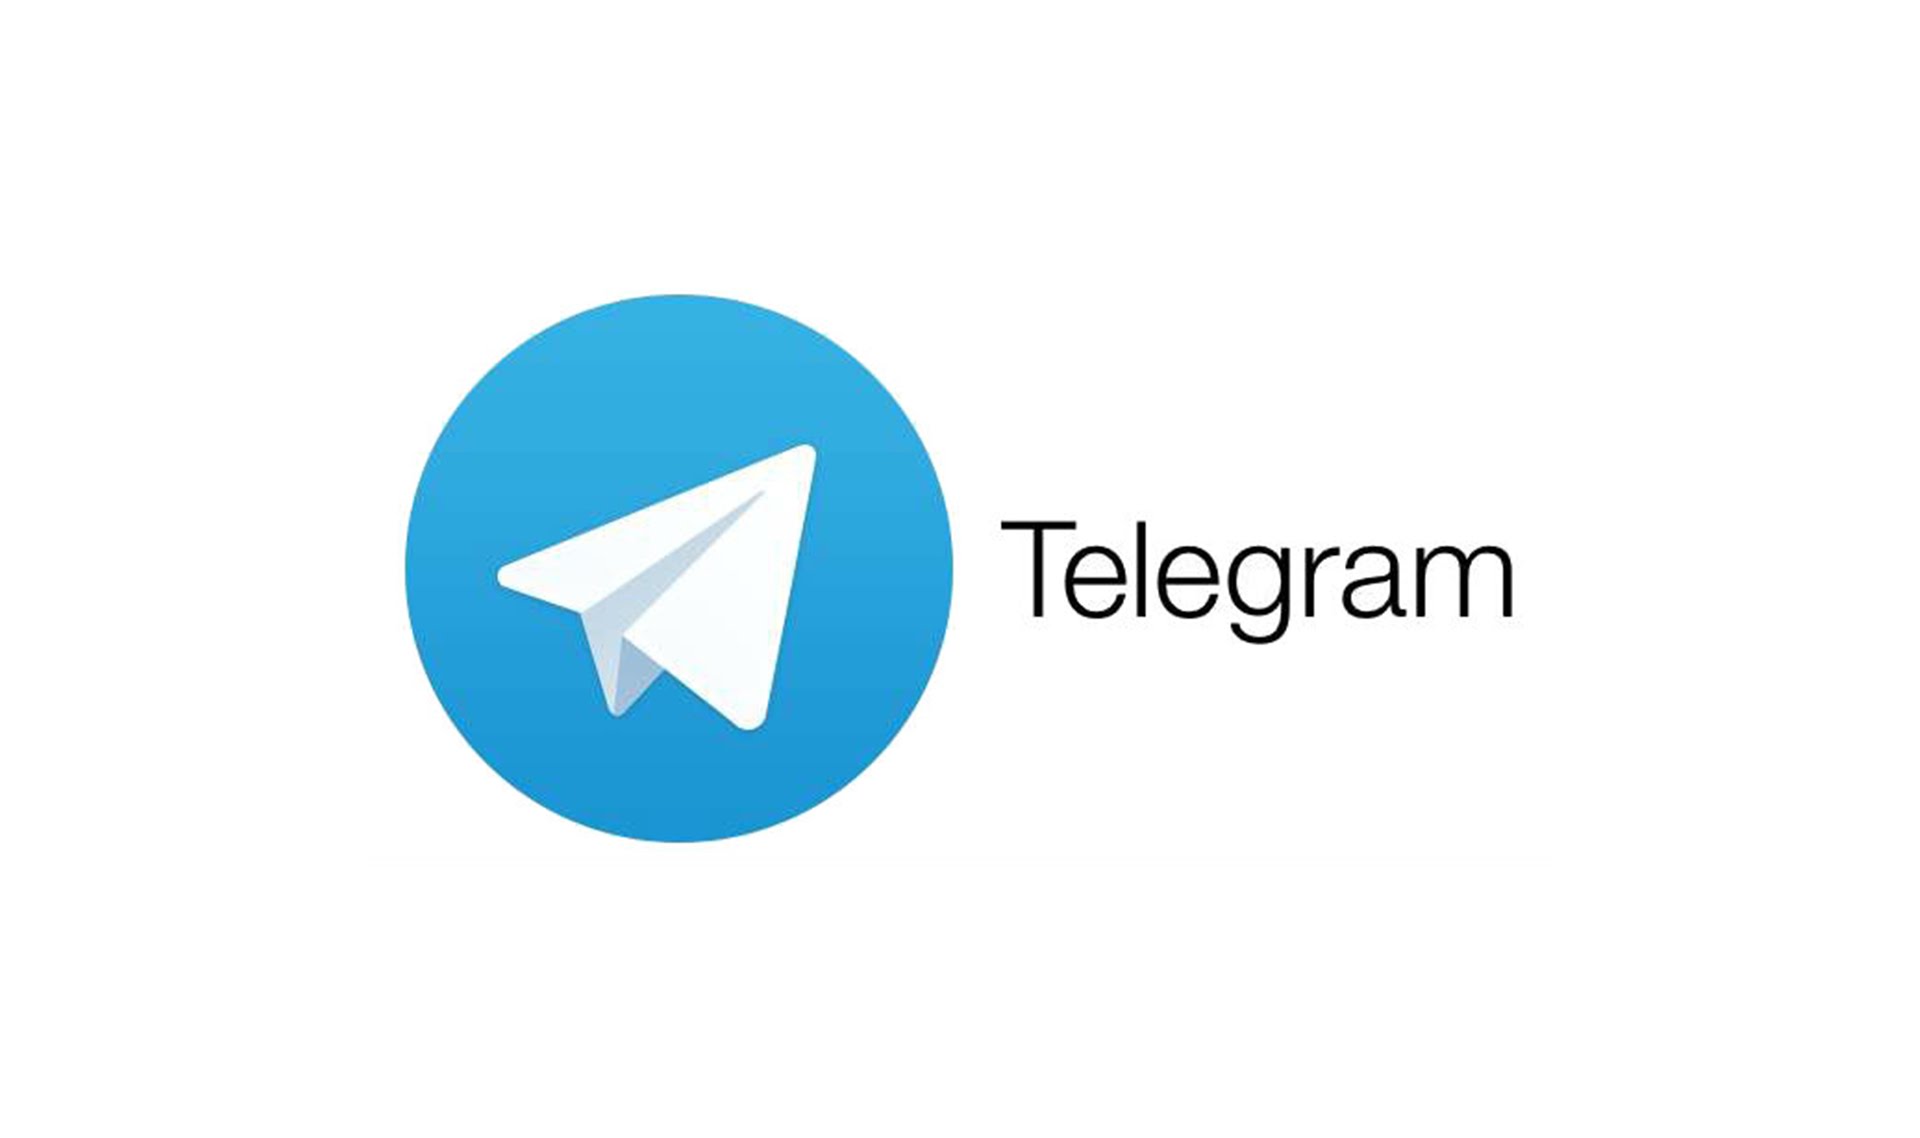 قابلیت های شگفت انگیز نسخه آپدیت تلگرام!